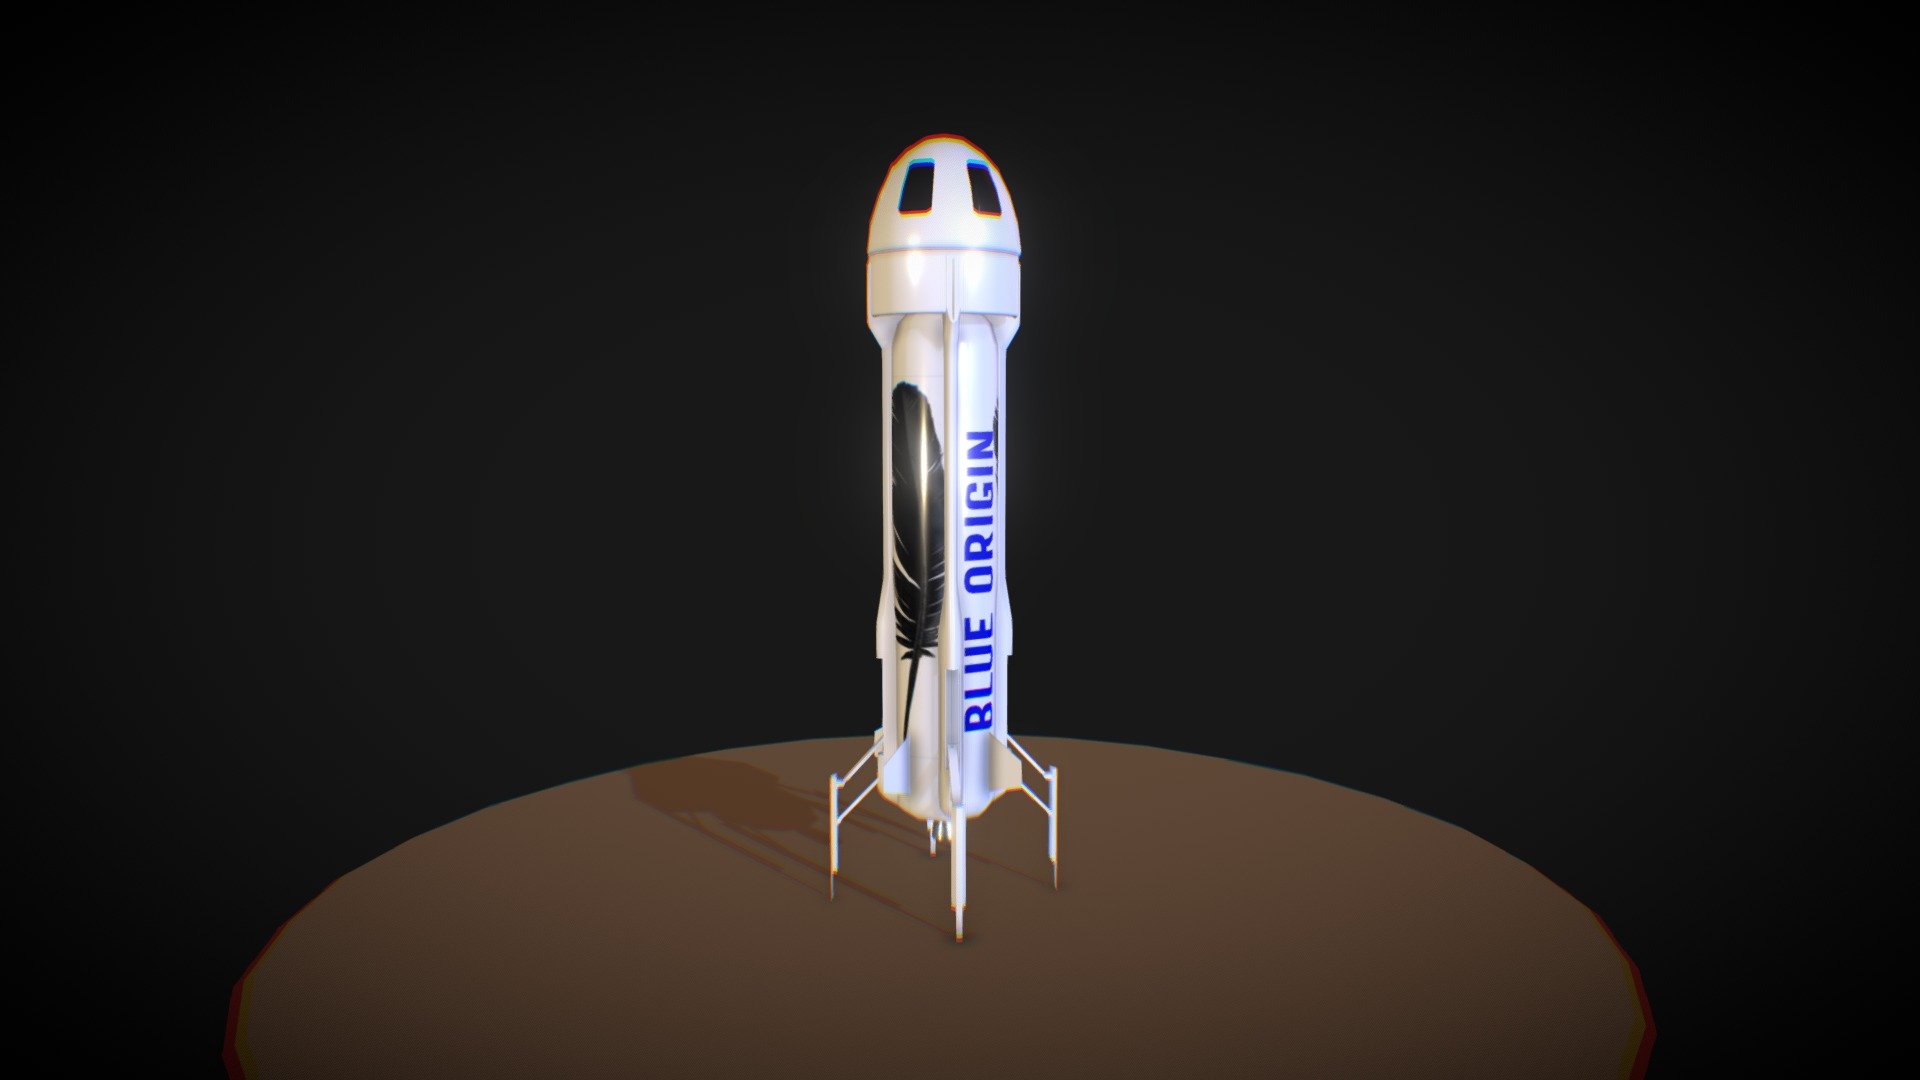 Nếu bạn đang tìm kiếm một mô hình 3D tuyệt đẹp về New Shepard với đặc điểm Low Poly độc đáo, chúng tôi cung cấp cho bạn sự lựa chọn tuyệt vời. Hãy truy cập ngay hình ảnh tương ứng để khám phá chiếc tên lửa đầy tiềm năng này với cách hiển thị độc đáo.